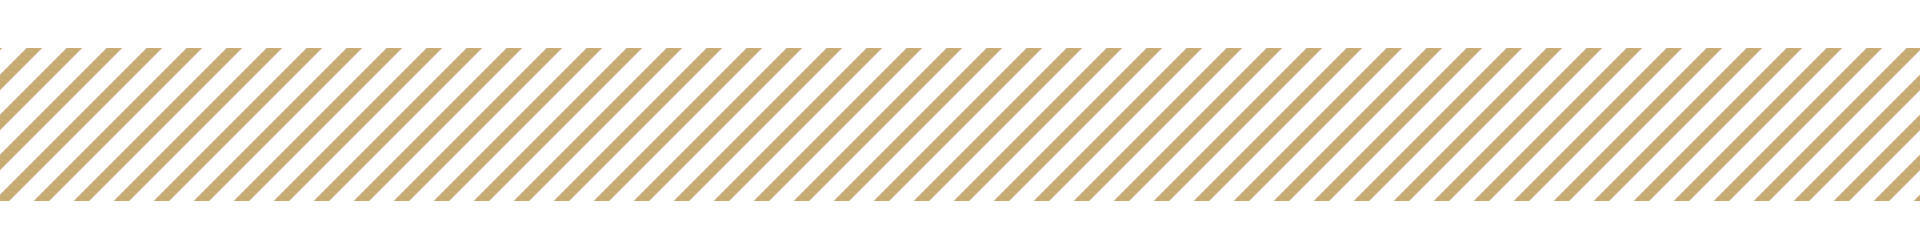 Diagonal gold stripes